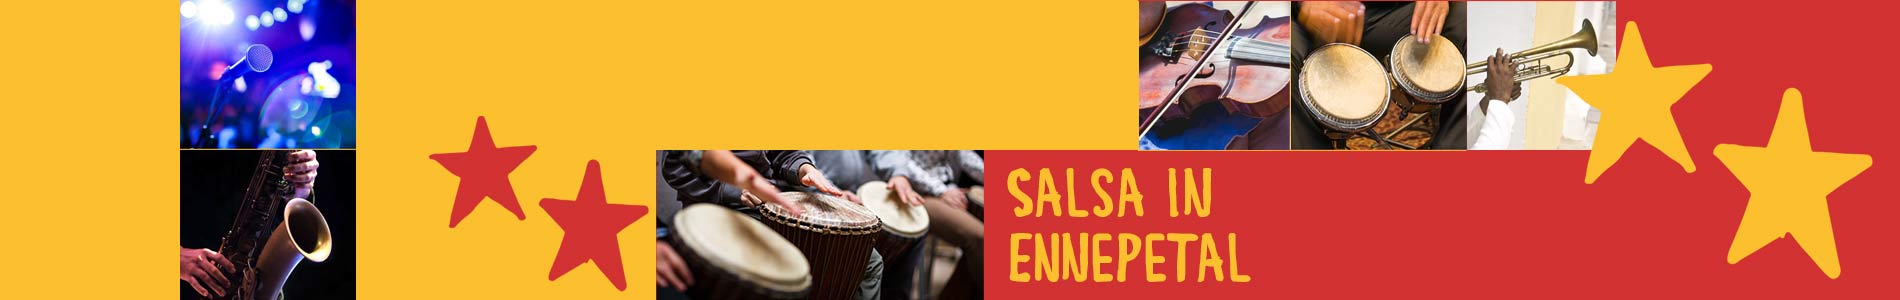 Salsa in Ennepetal – Salsa lernen und tanzen, Tanzkurse, Partys, Veranstaltungen